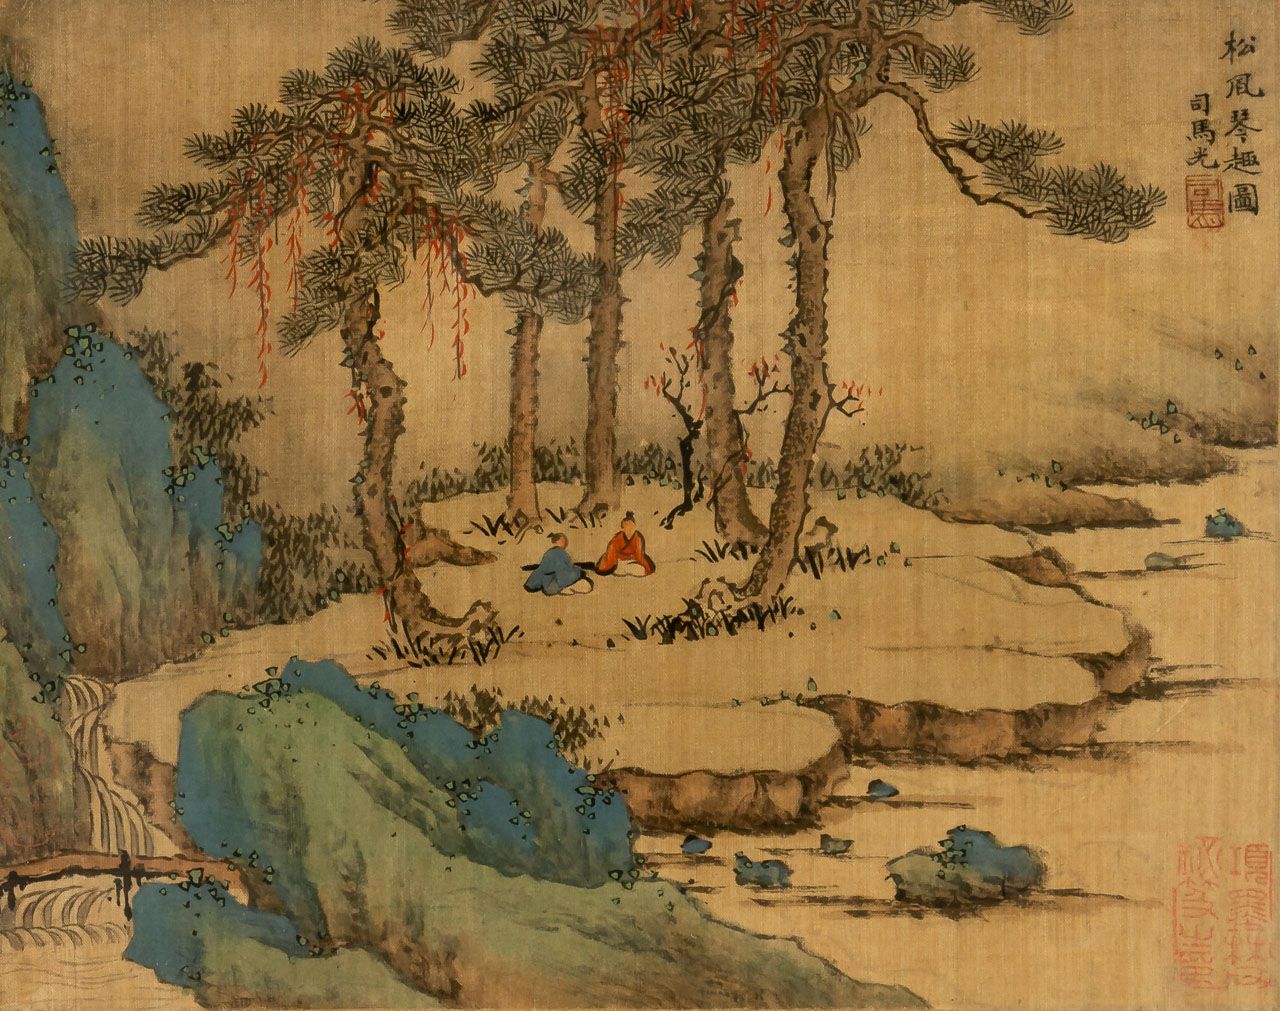 LANDSCHAFT China, pintado sobre seda, s. XIX

Tamaño de la luz: 21 x 27 cm, marc&hellip;